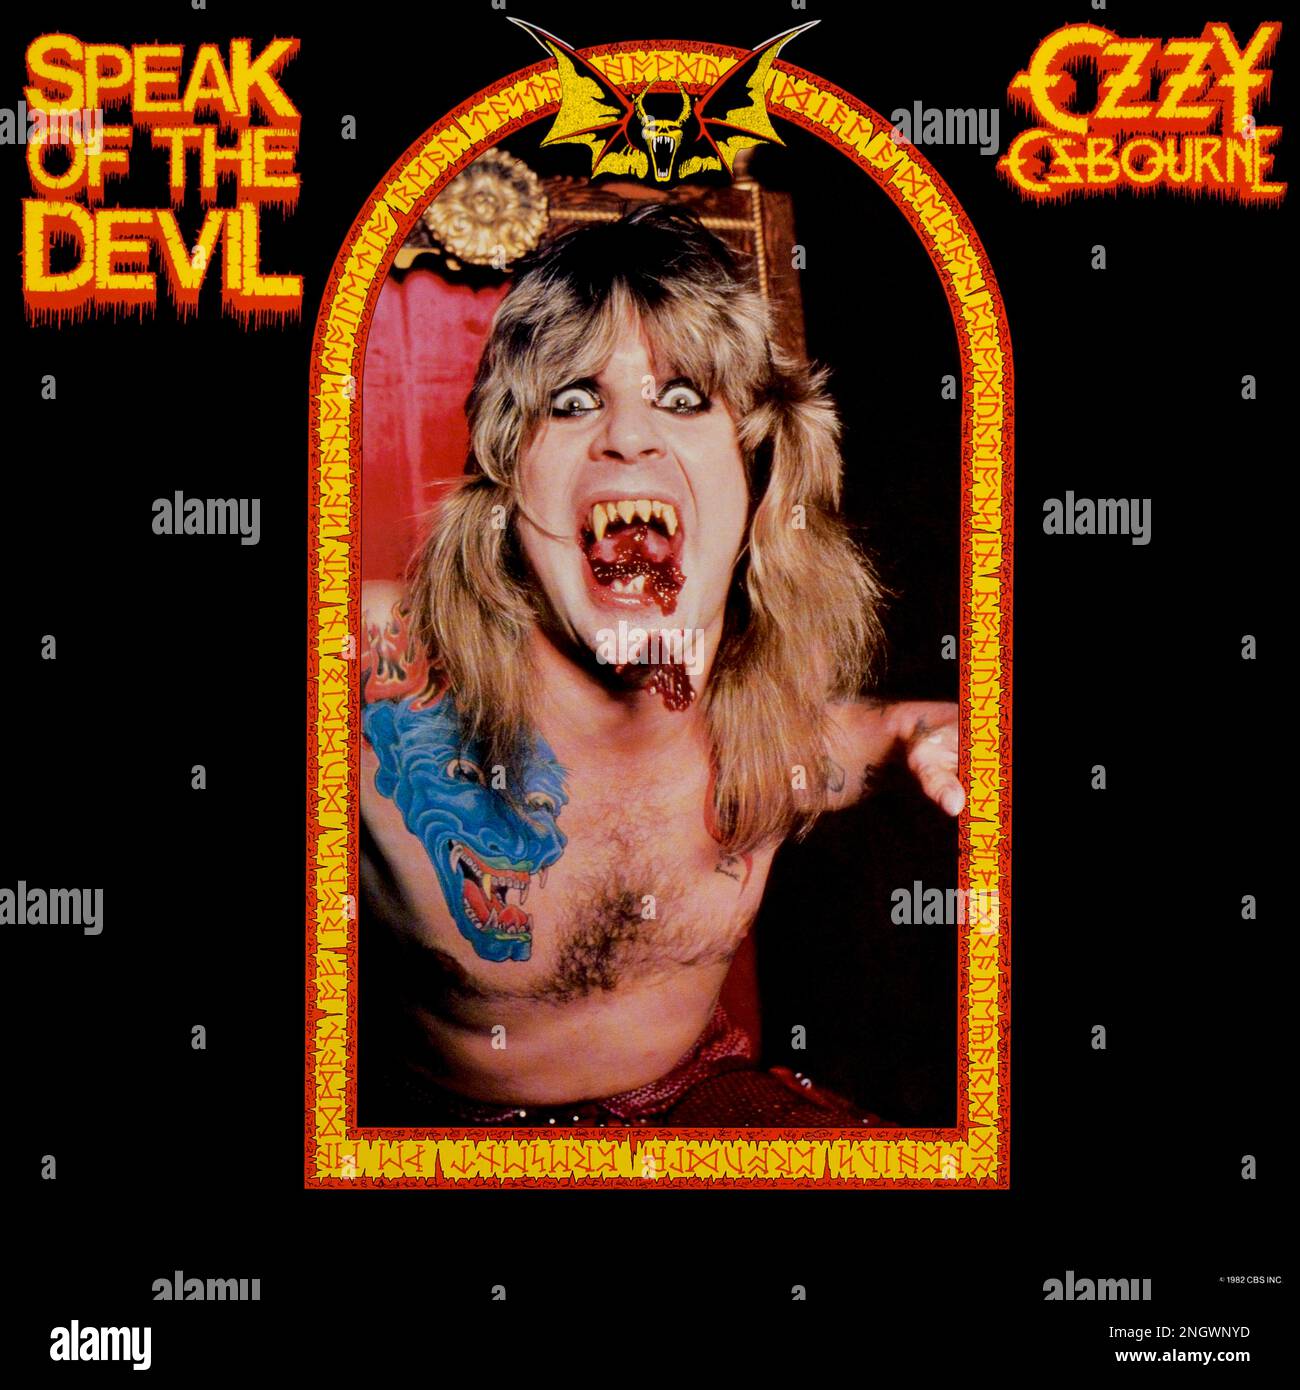 Ozzy Osbourne - copertina originale dell'album in vinile - Speak of the Devil - 1982 Foto Stock